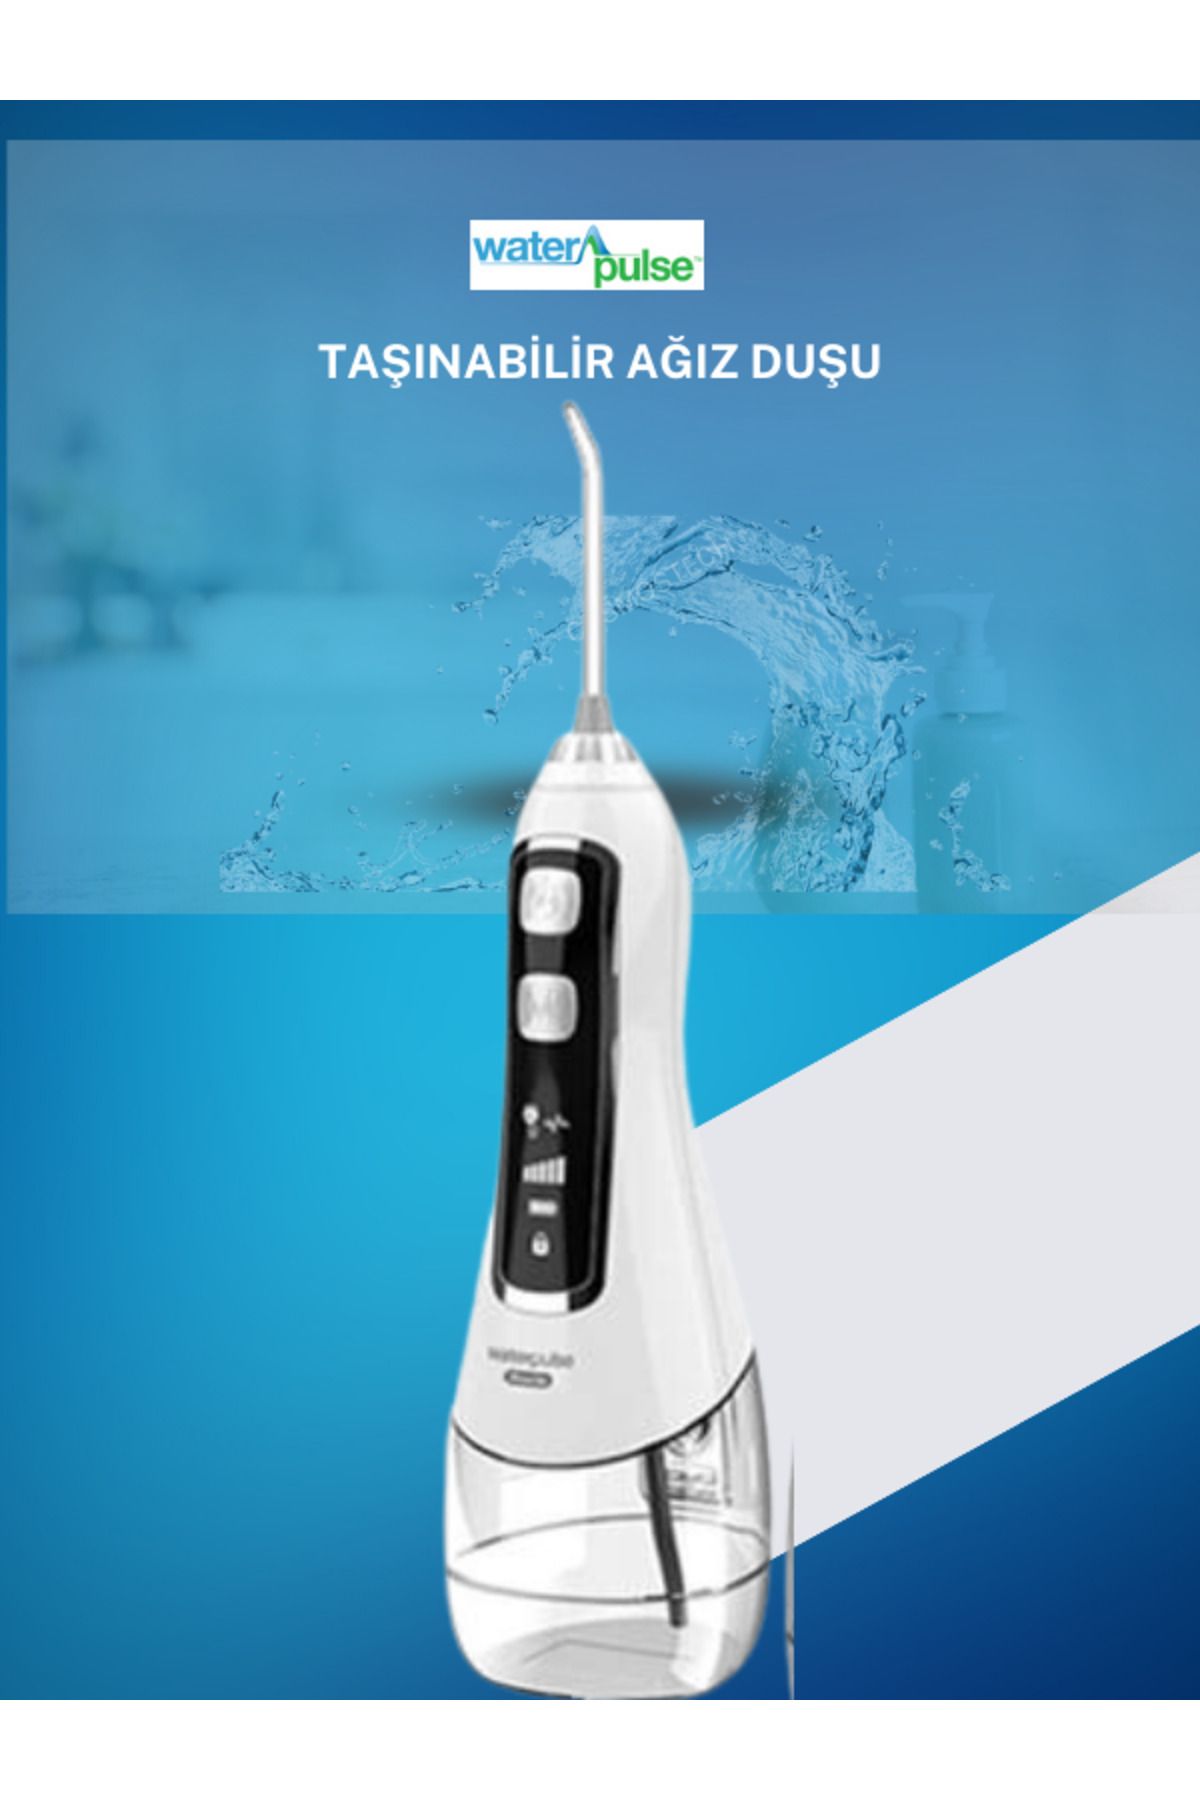 waterpulse Kablosuz Pro V580 Water Flosser 320ml Taşınabilir Diş/protez Bakım Ve Ağız Duşu Beyaz